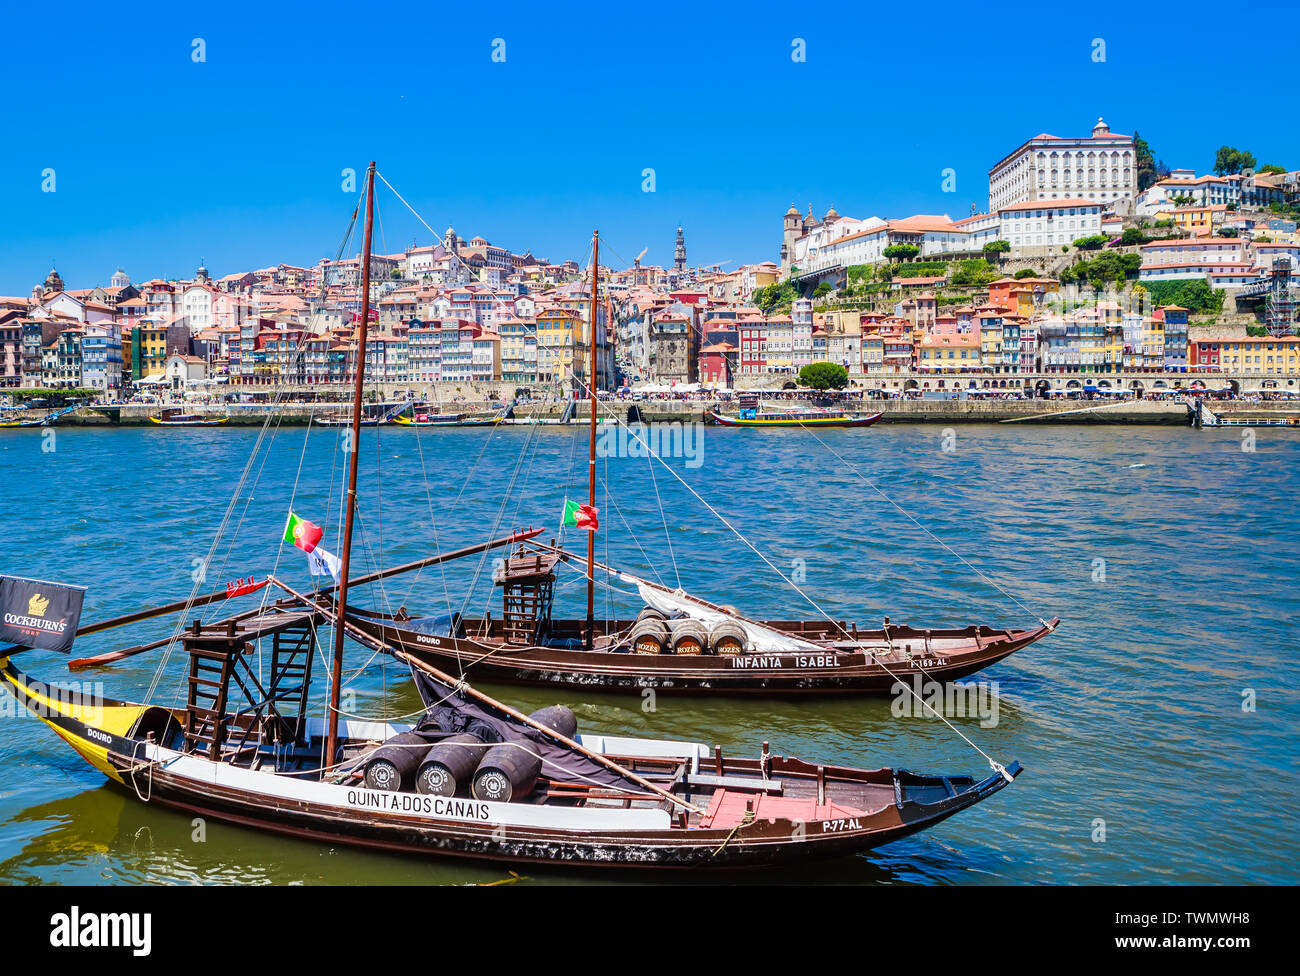 Barcos de madera típicos portugueses, llamado 'barcos rabelos' transportar barriles de vino en el río Duero, con vistas a la Villa Nova de Gaia, en Oporto, Portug Foto de stock